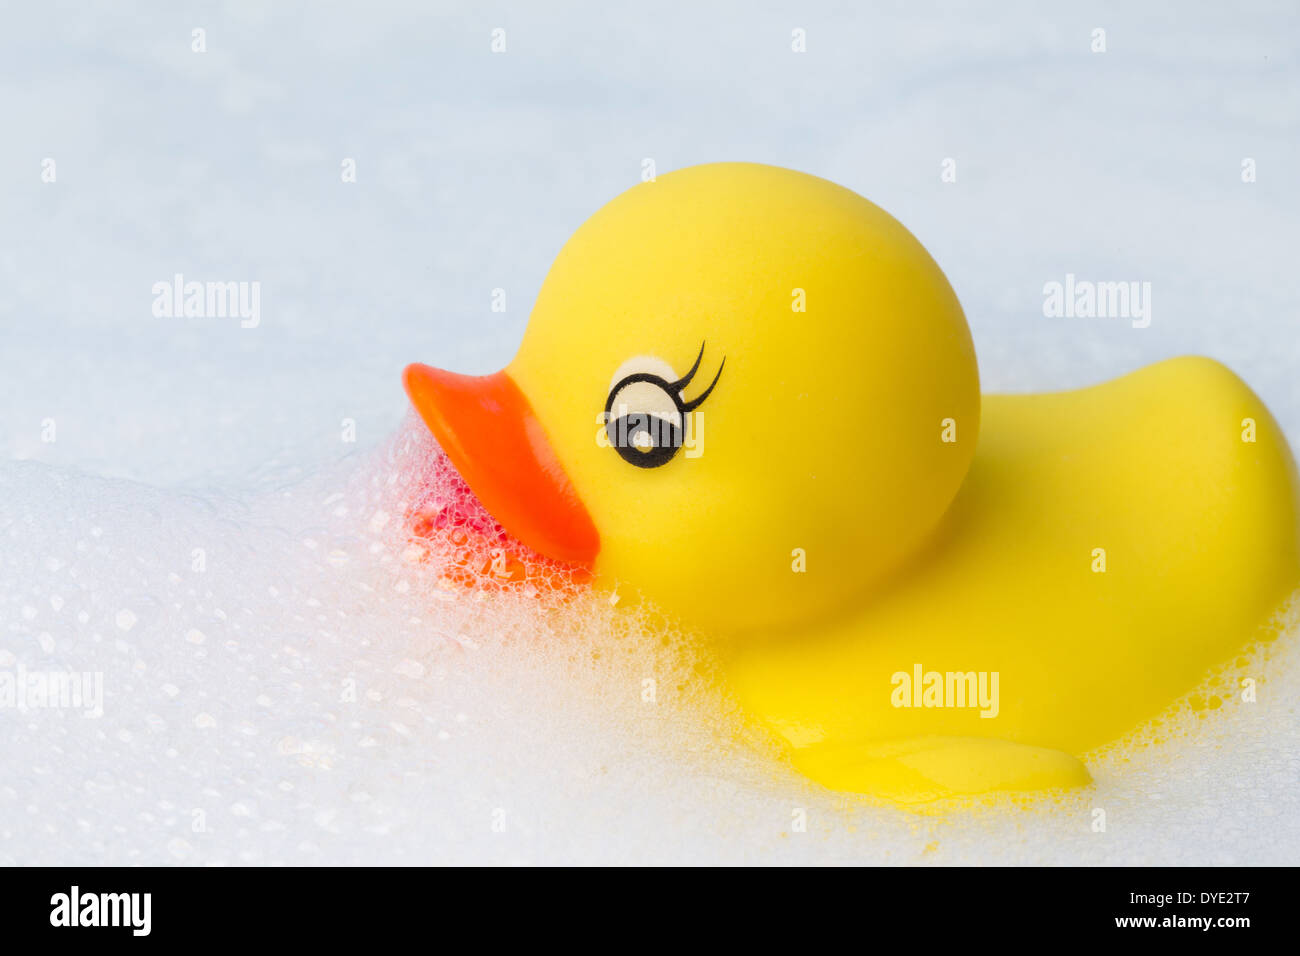 Un canard en plastique jaune flottant dans un bain de mousse écumeuse Banque D'Images